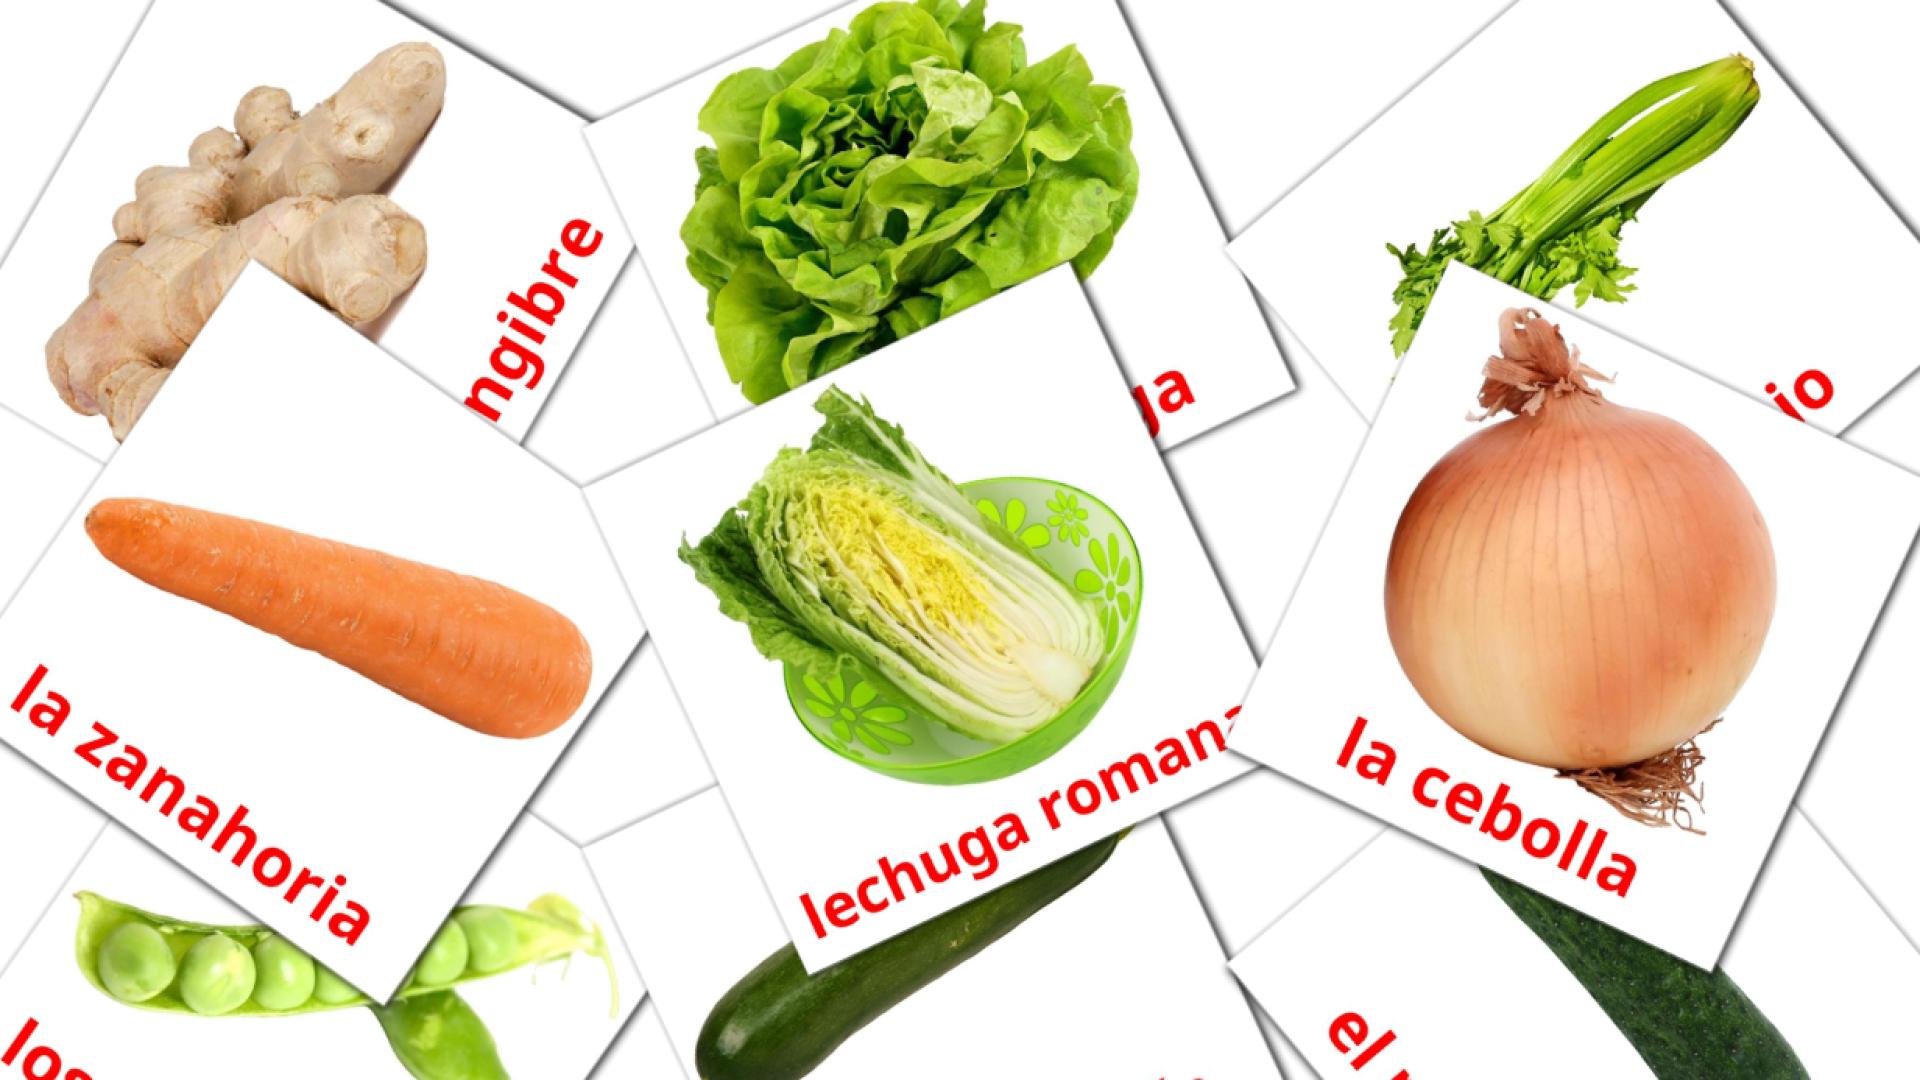 Bildkarten für Verduras